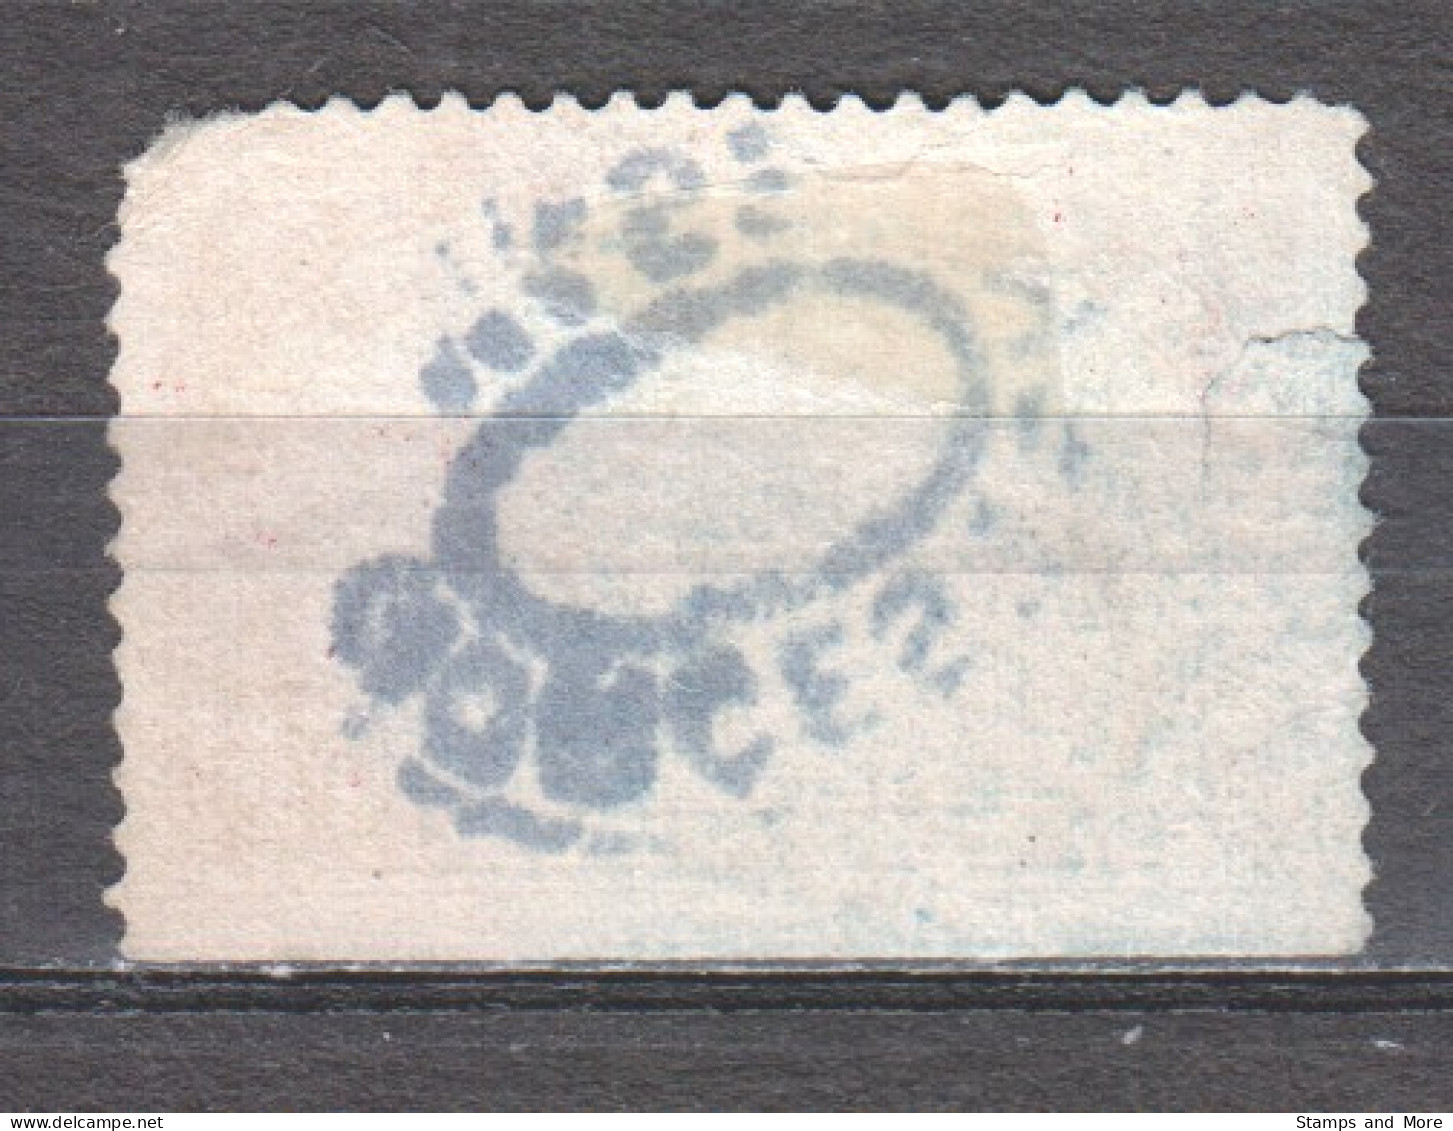 USA 1912 Paketmarke Mi 11 Canceled (with Defects) - Reisgoedzegels